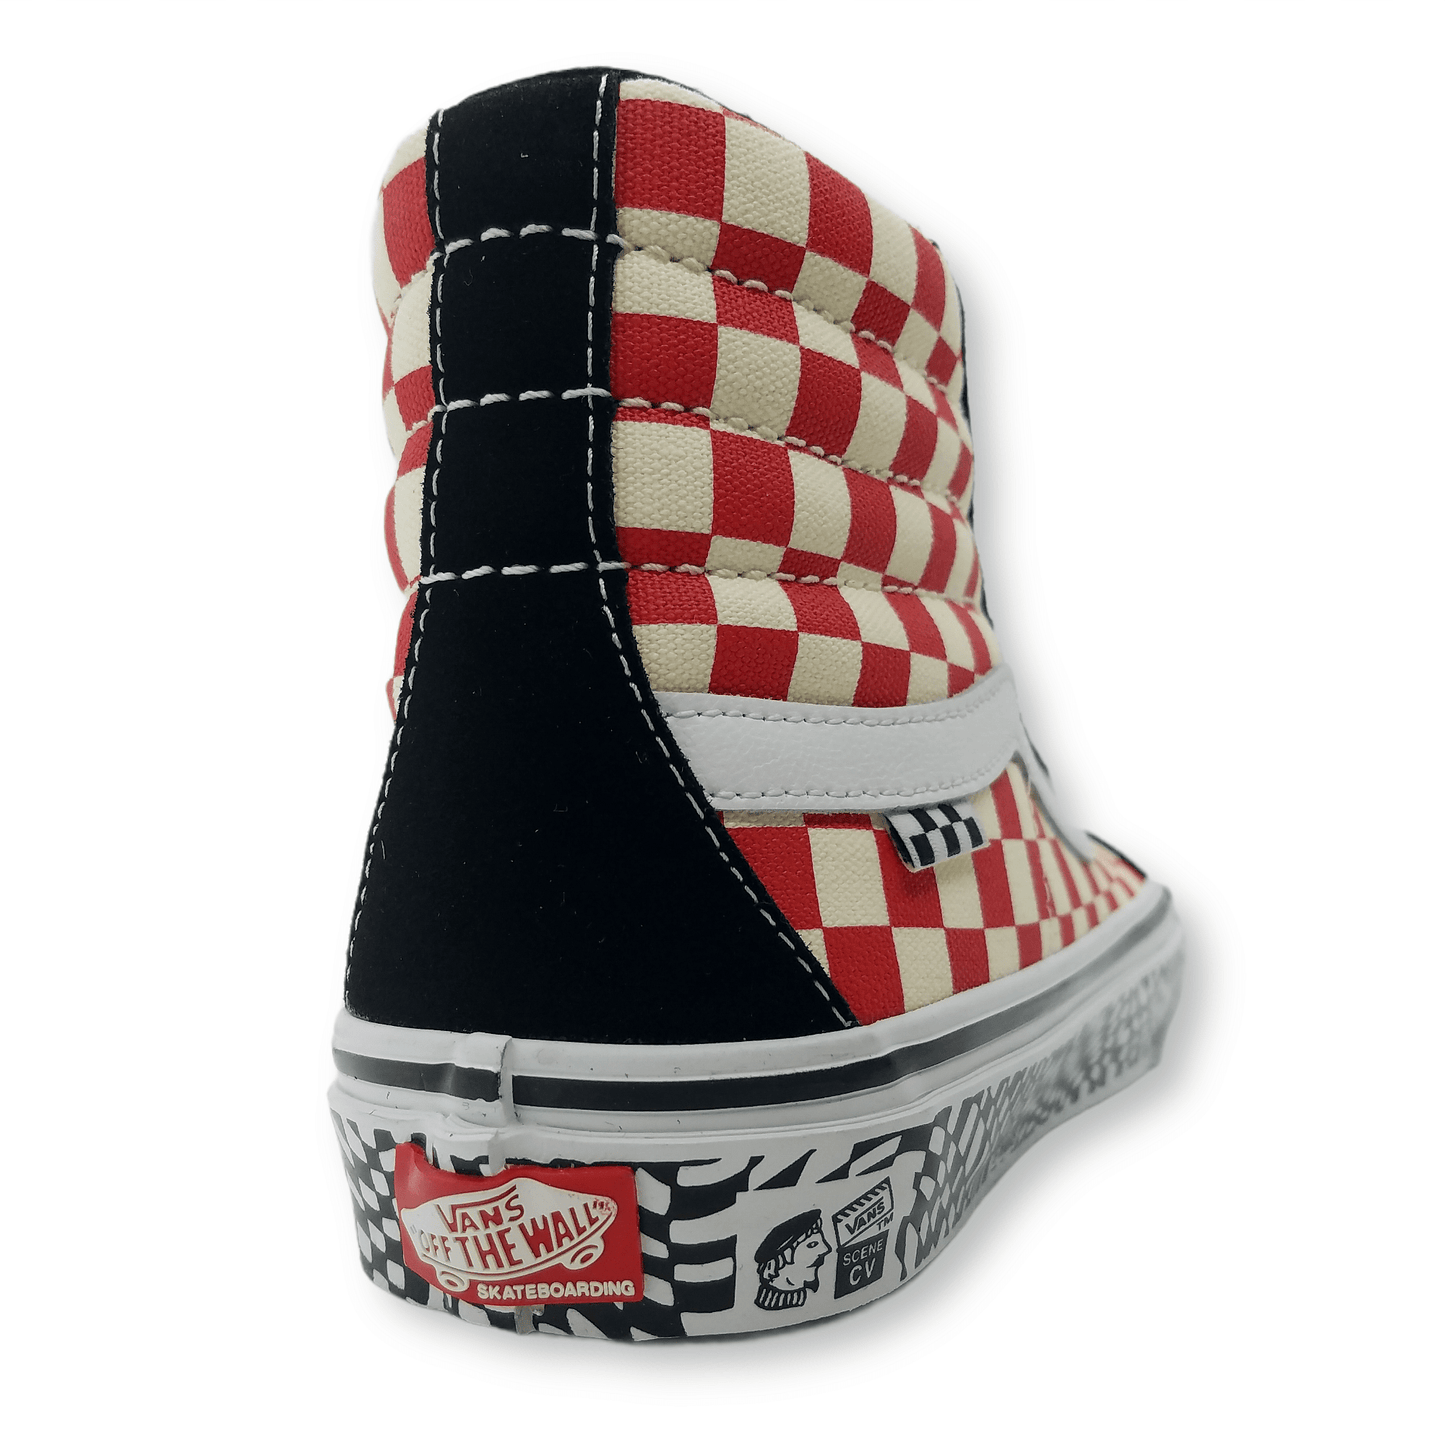 Vans | Skate Sk8-Hi Reissue - Grosso '84 Black/Red Checkers